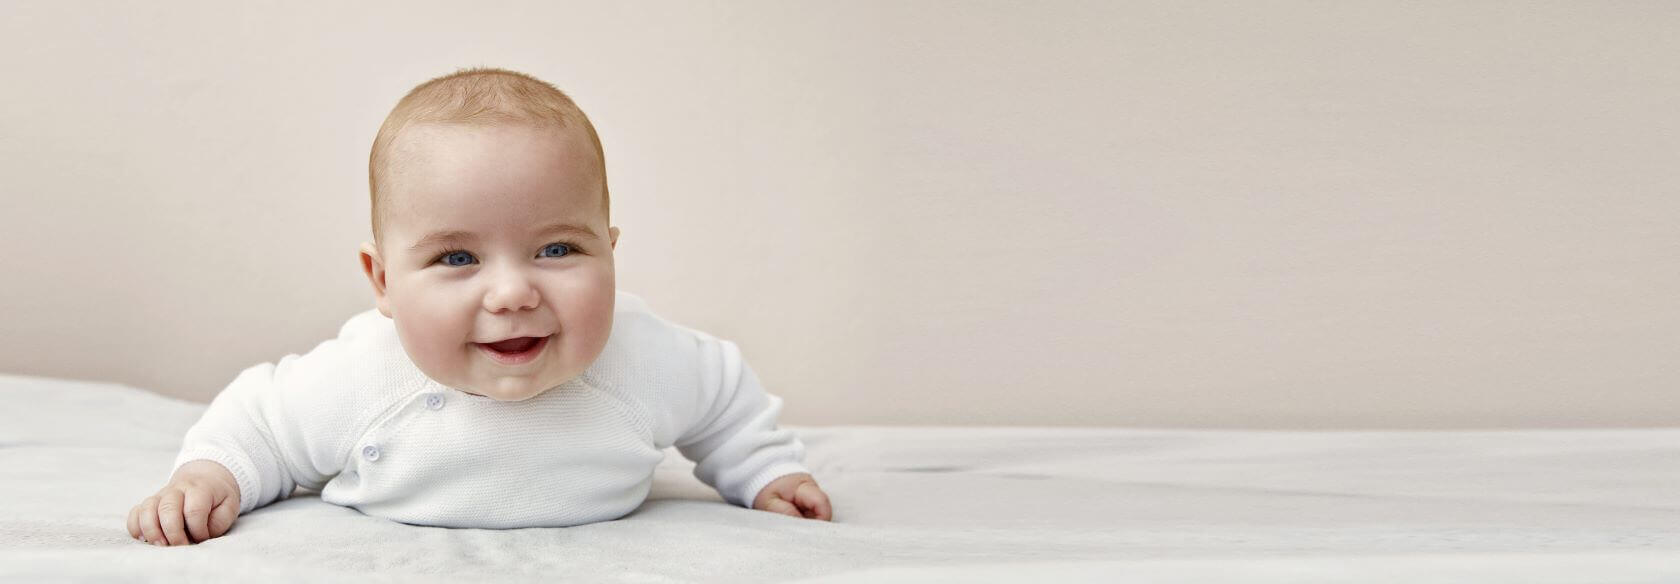 Lachende baby liggend op een witte ondergrond